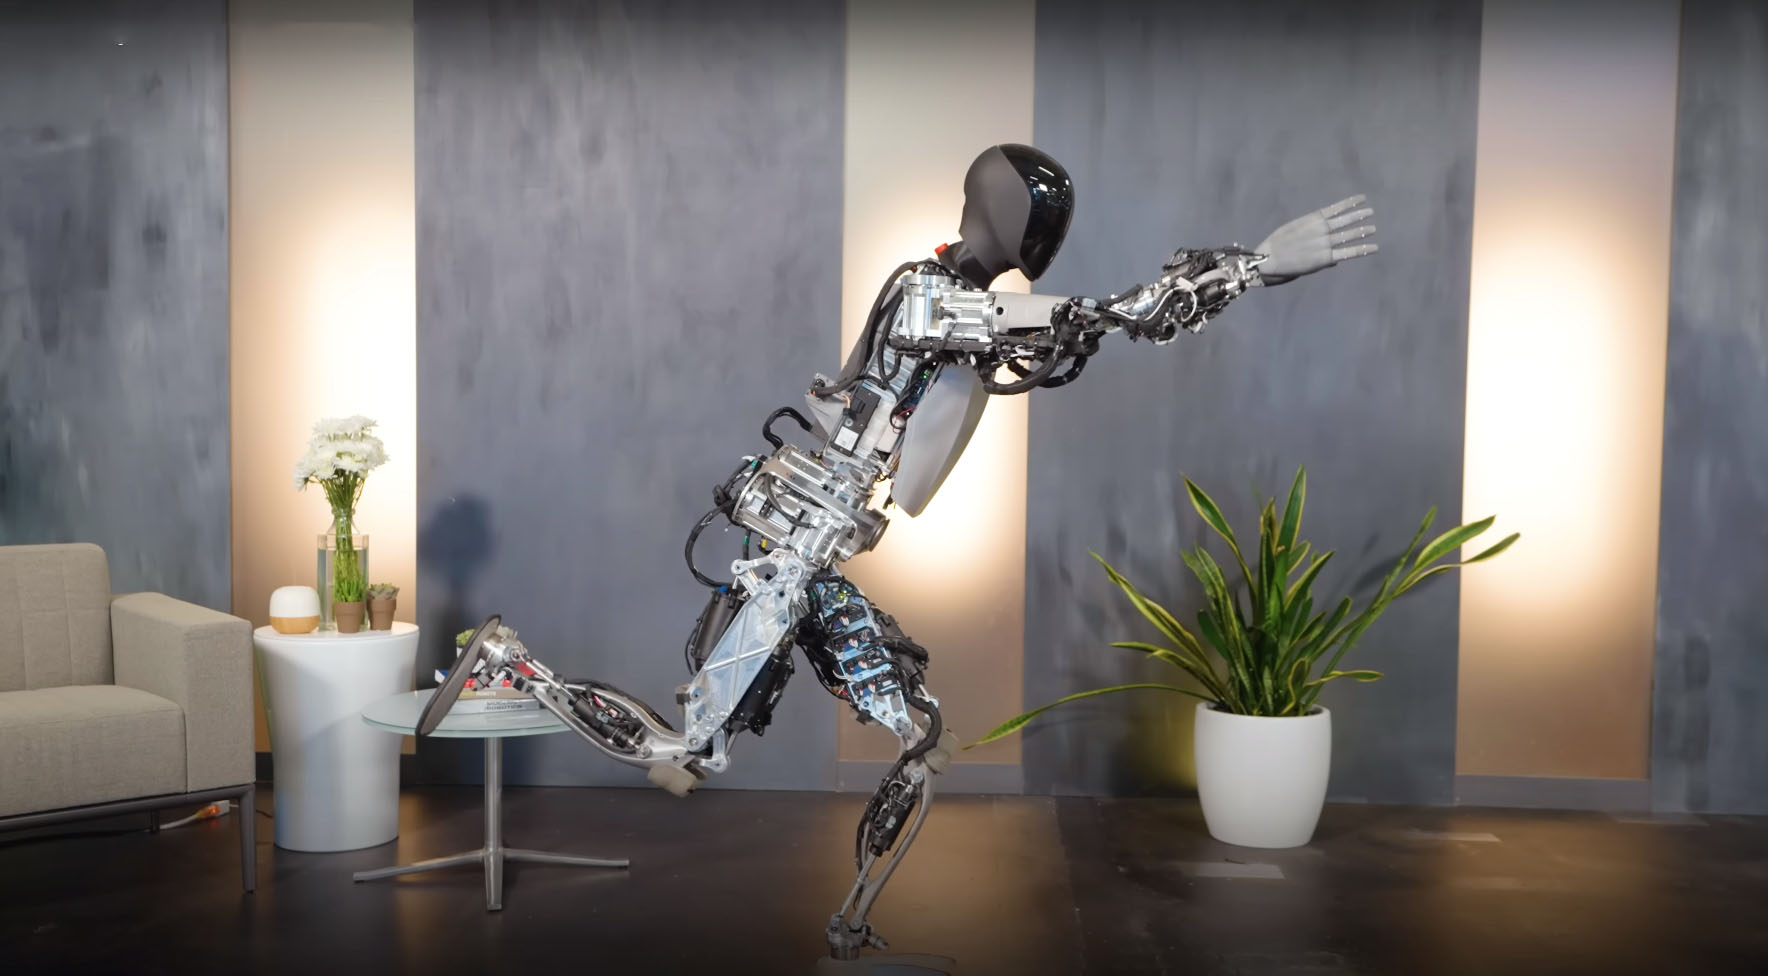 Посмотрите, как гуманоидный робот Tesla занимается йогой